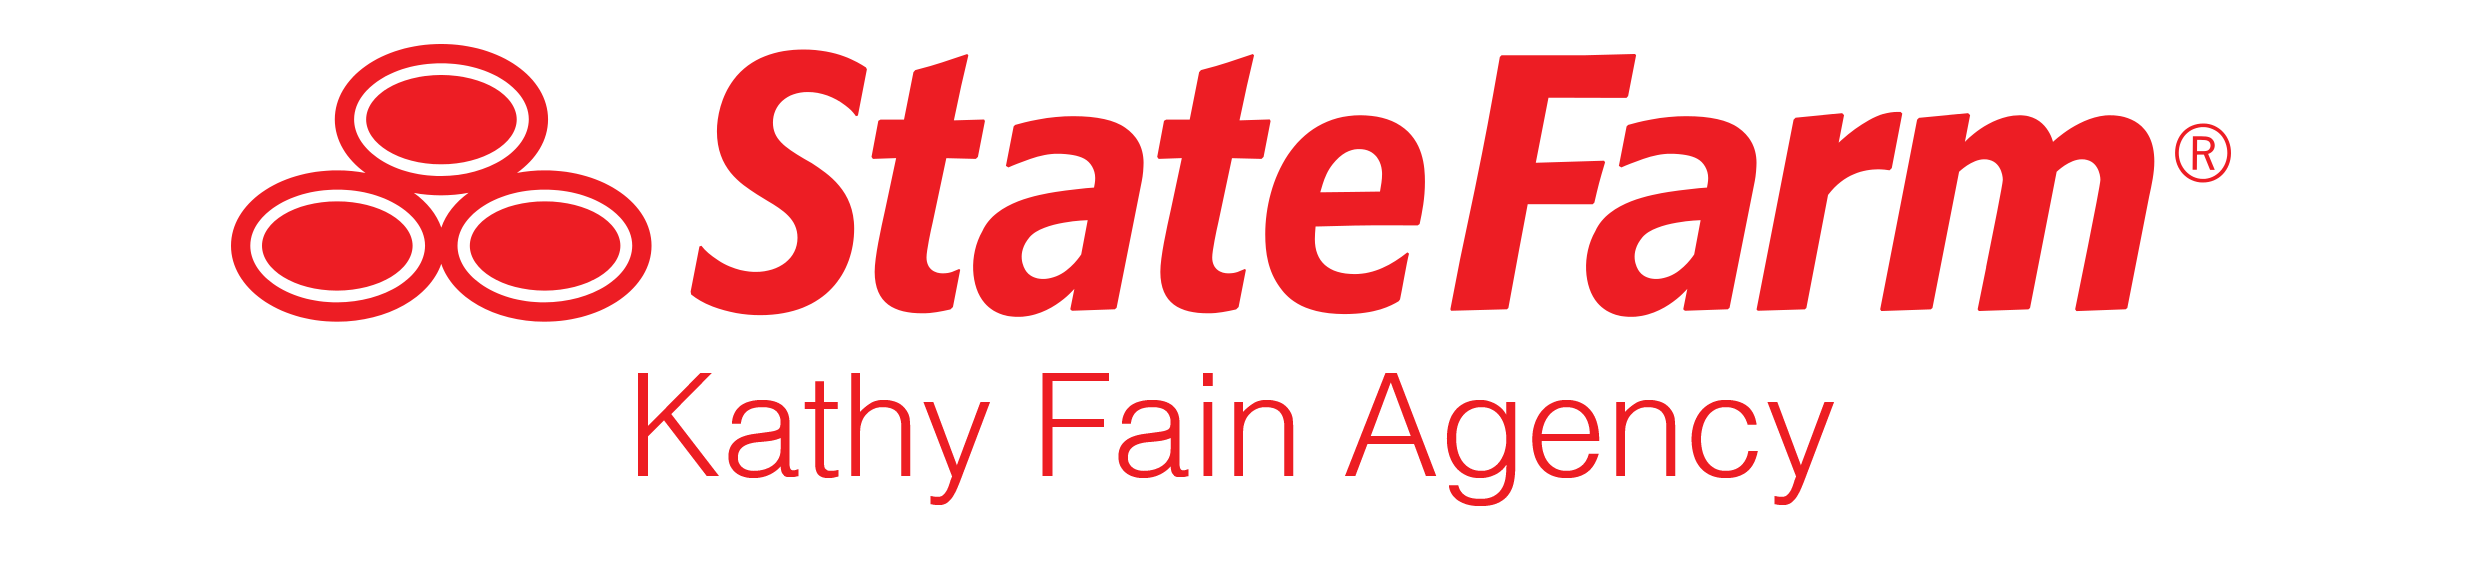 State Farm-Kathy Fain Agency